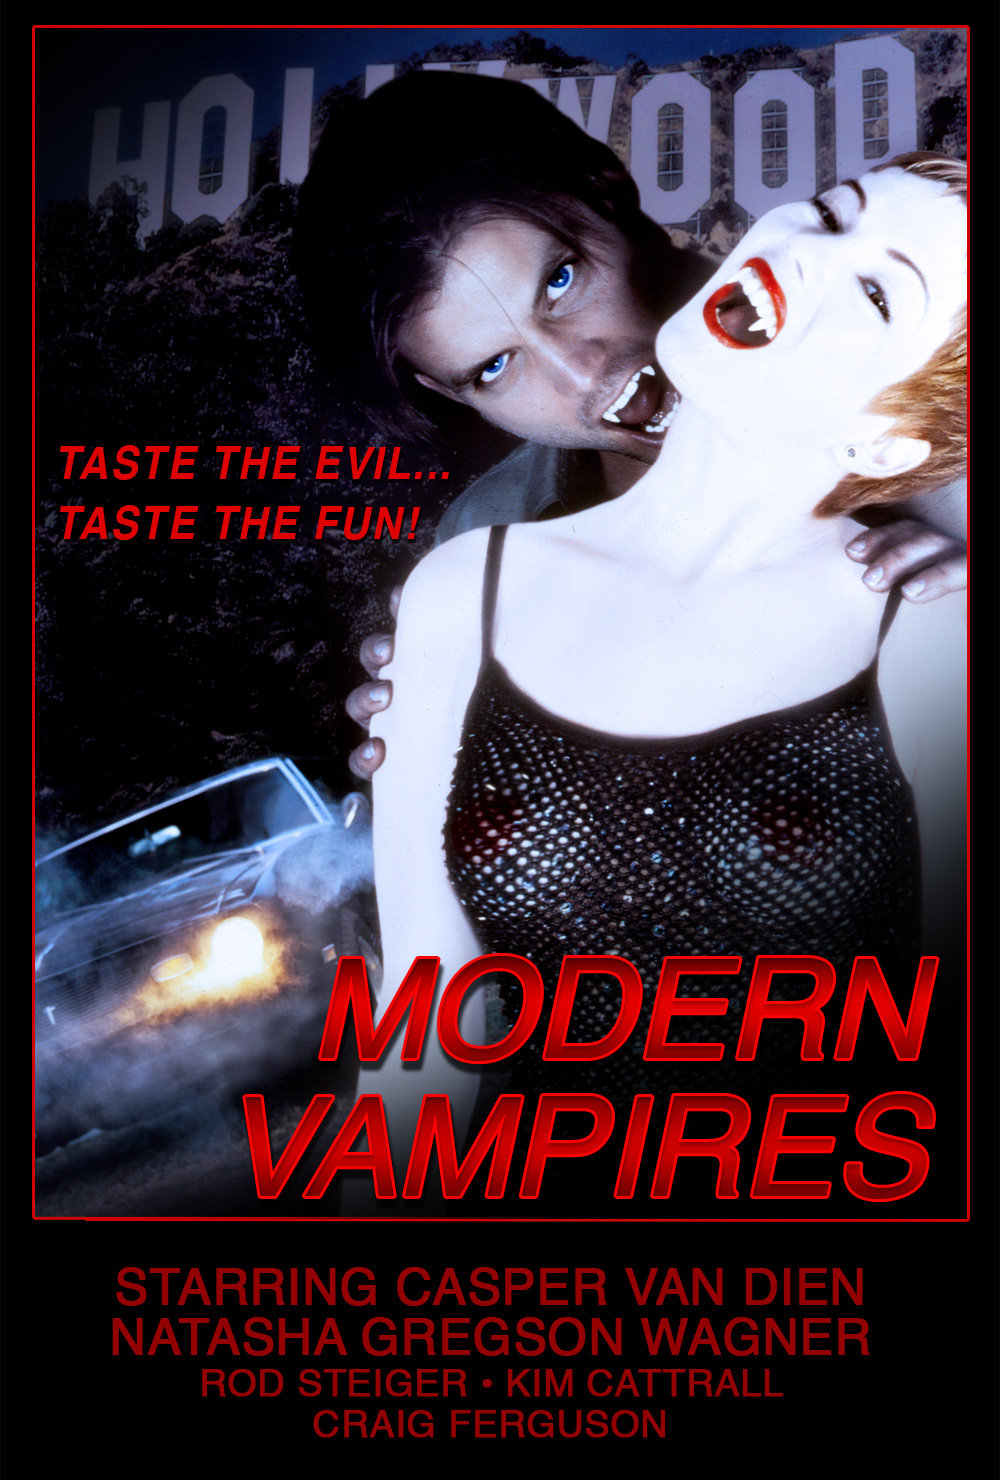  فیلم سینمایی Modern Vampires به کارگردانی Richard Elfman